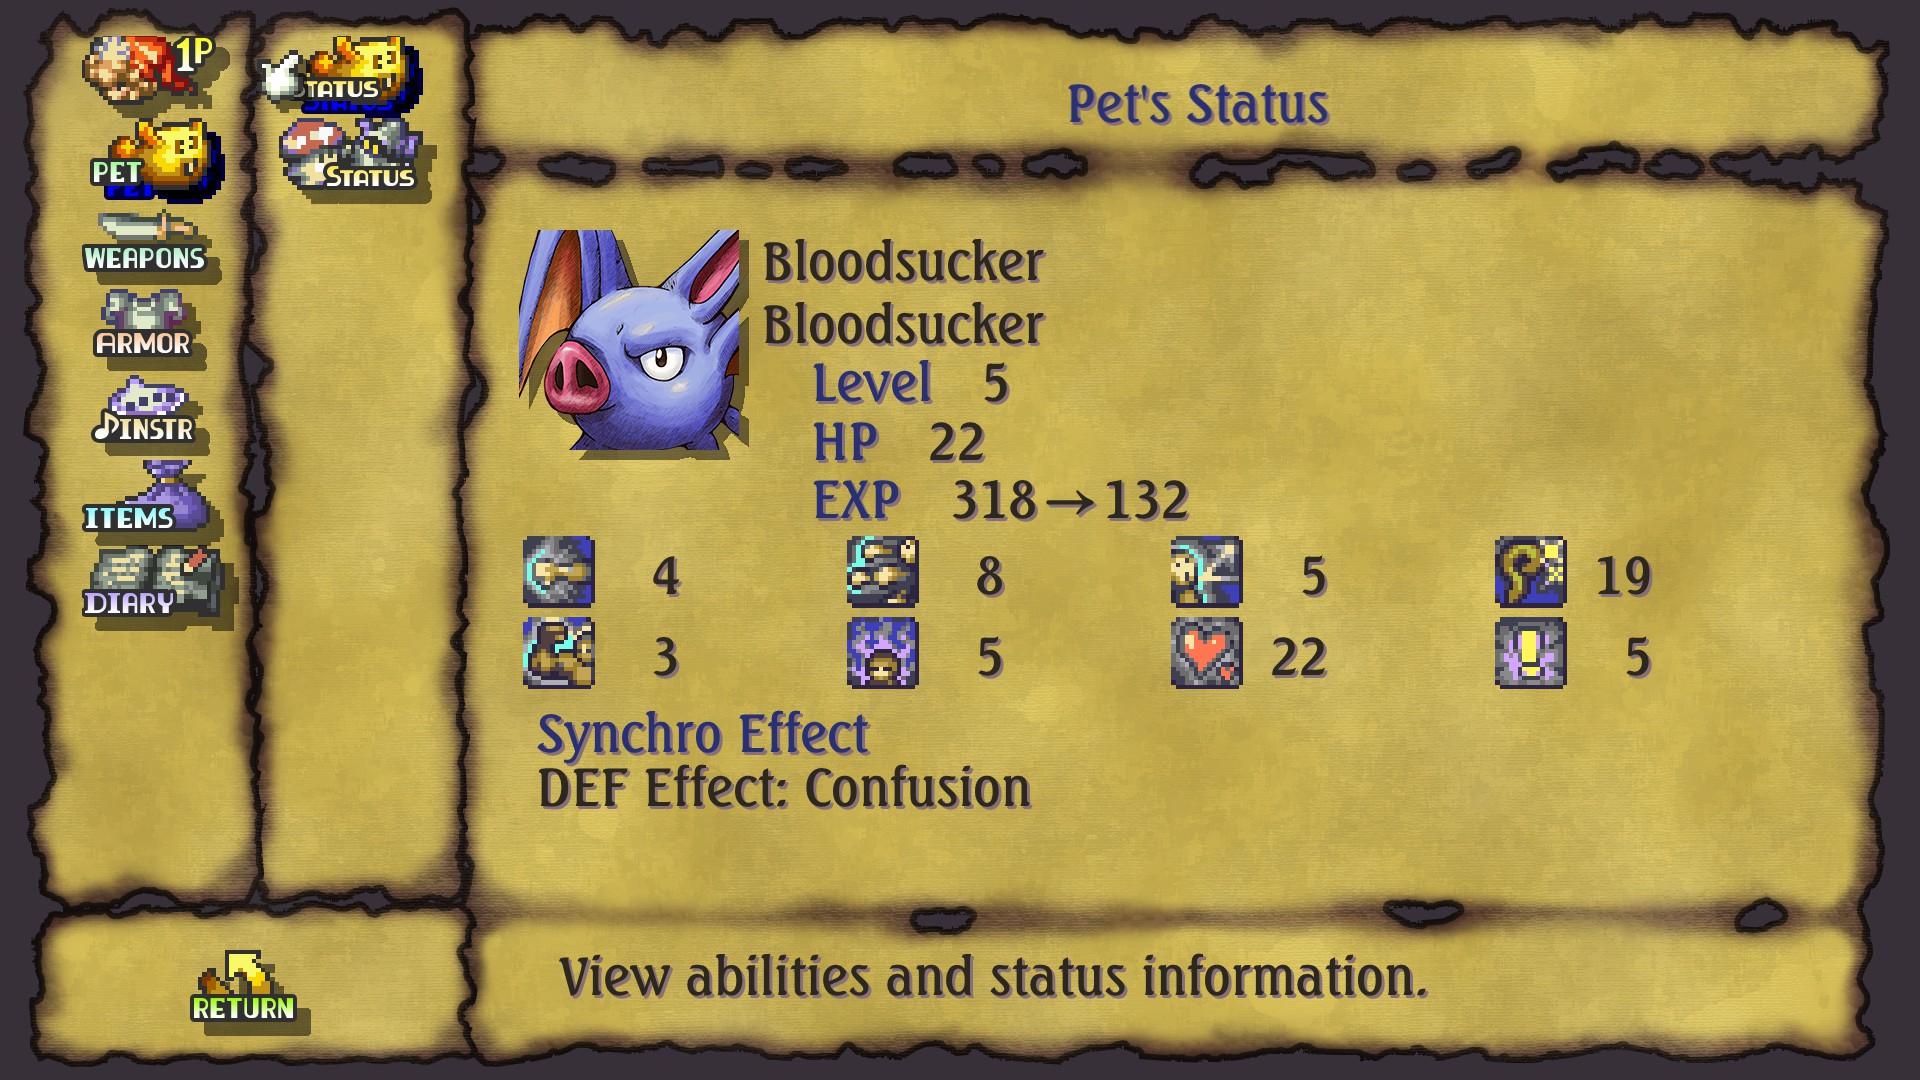 Legend of Mana Monster Guide for Raising Pet and Breeding Mechanics